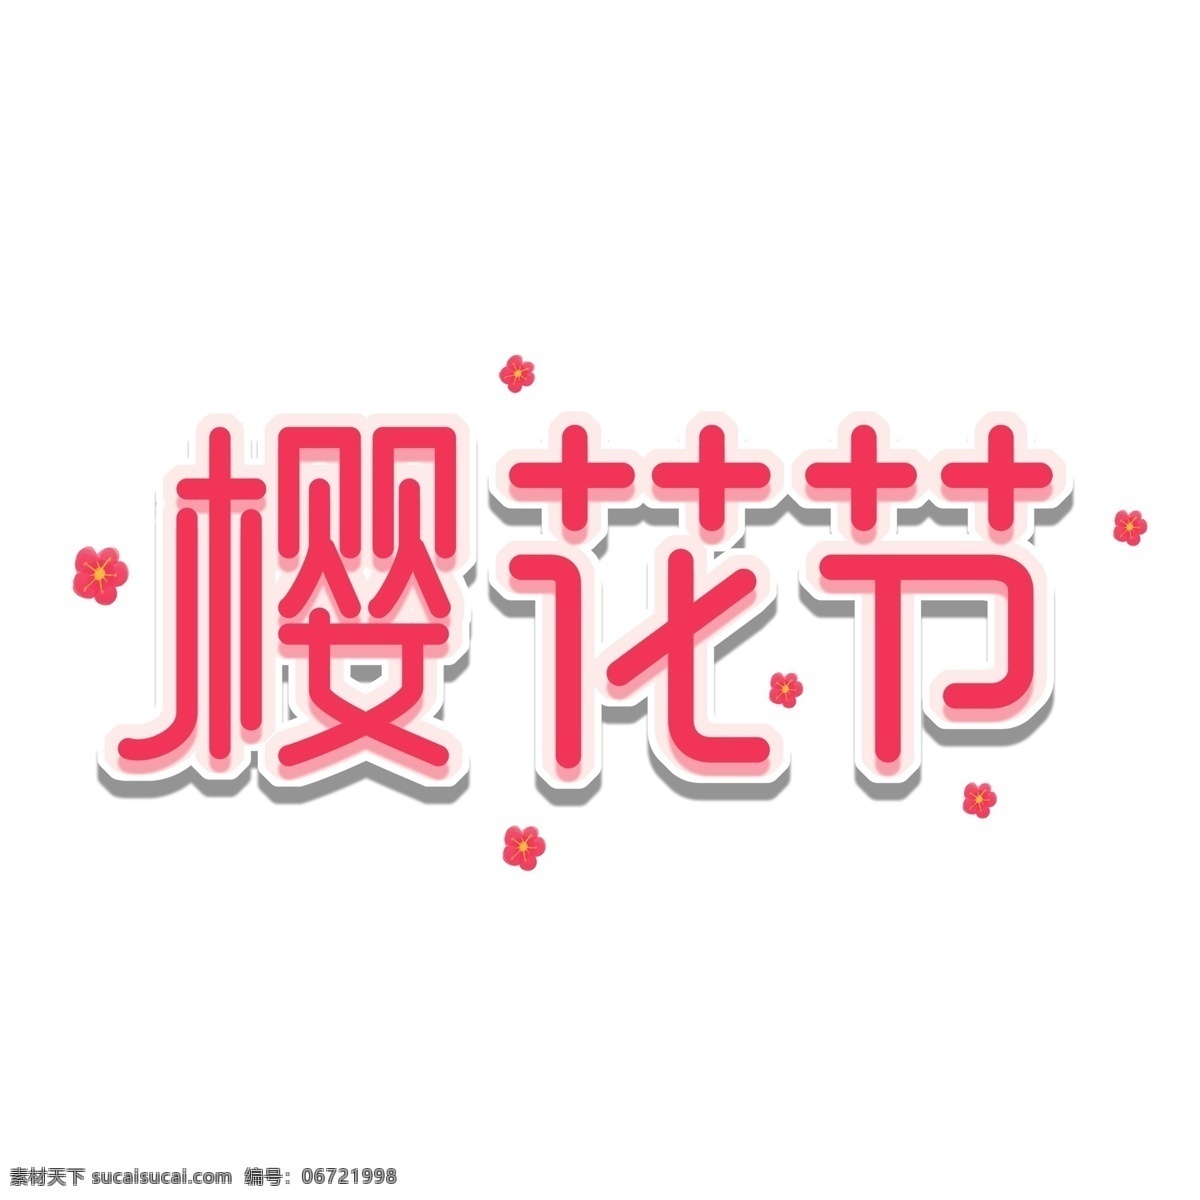 樱花节 艺术 字 粉色 赏 樱花 手绘 元素 艺术字 字体设计 字体 创意字体 可爱字体 个性字体 字体元素 元素设计